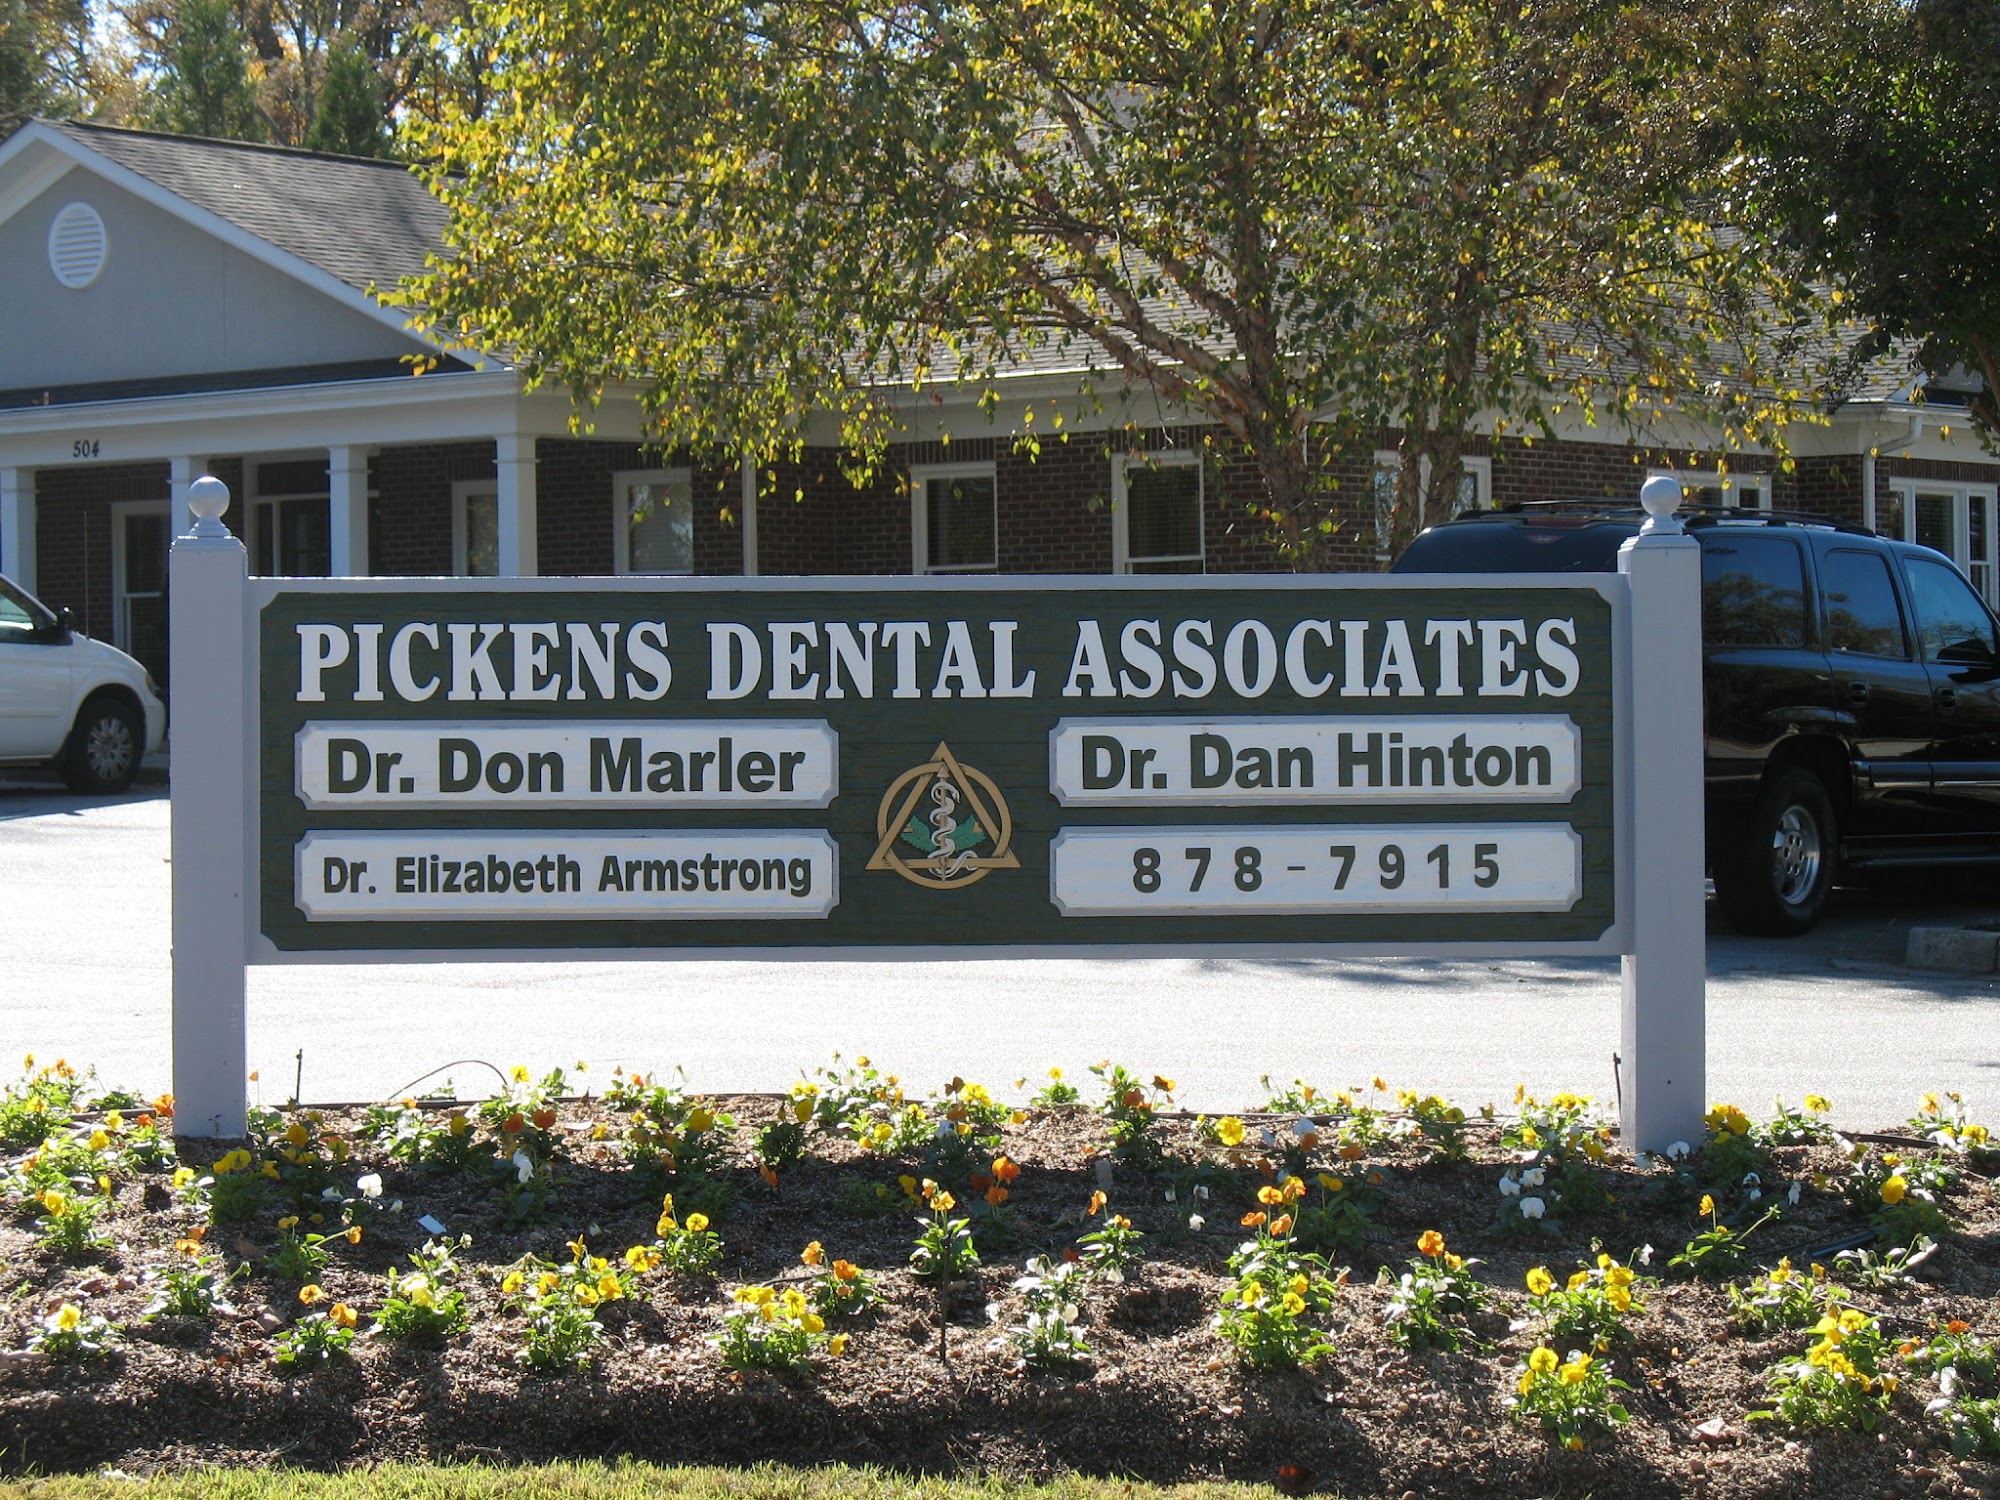 Pickens Dental Associates: Don Marler, DMD